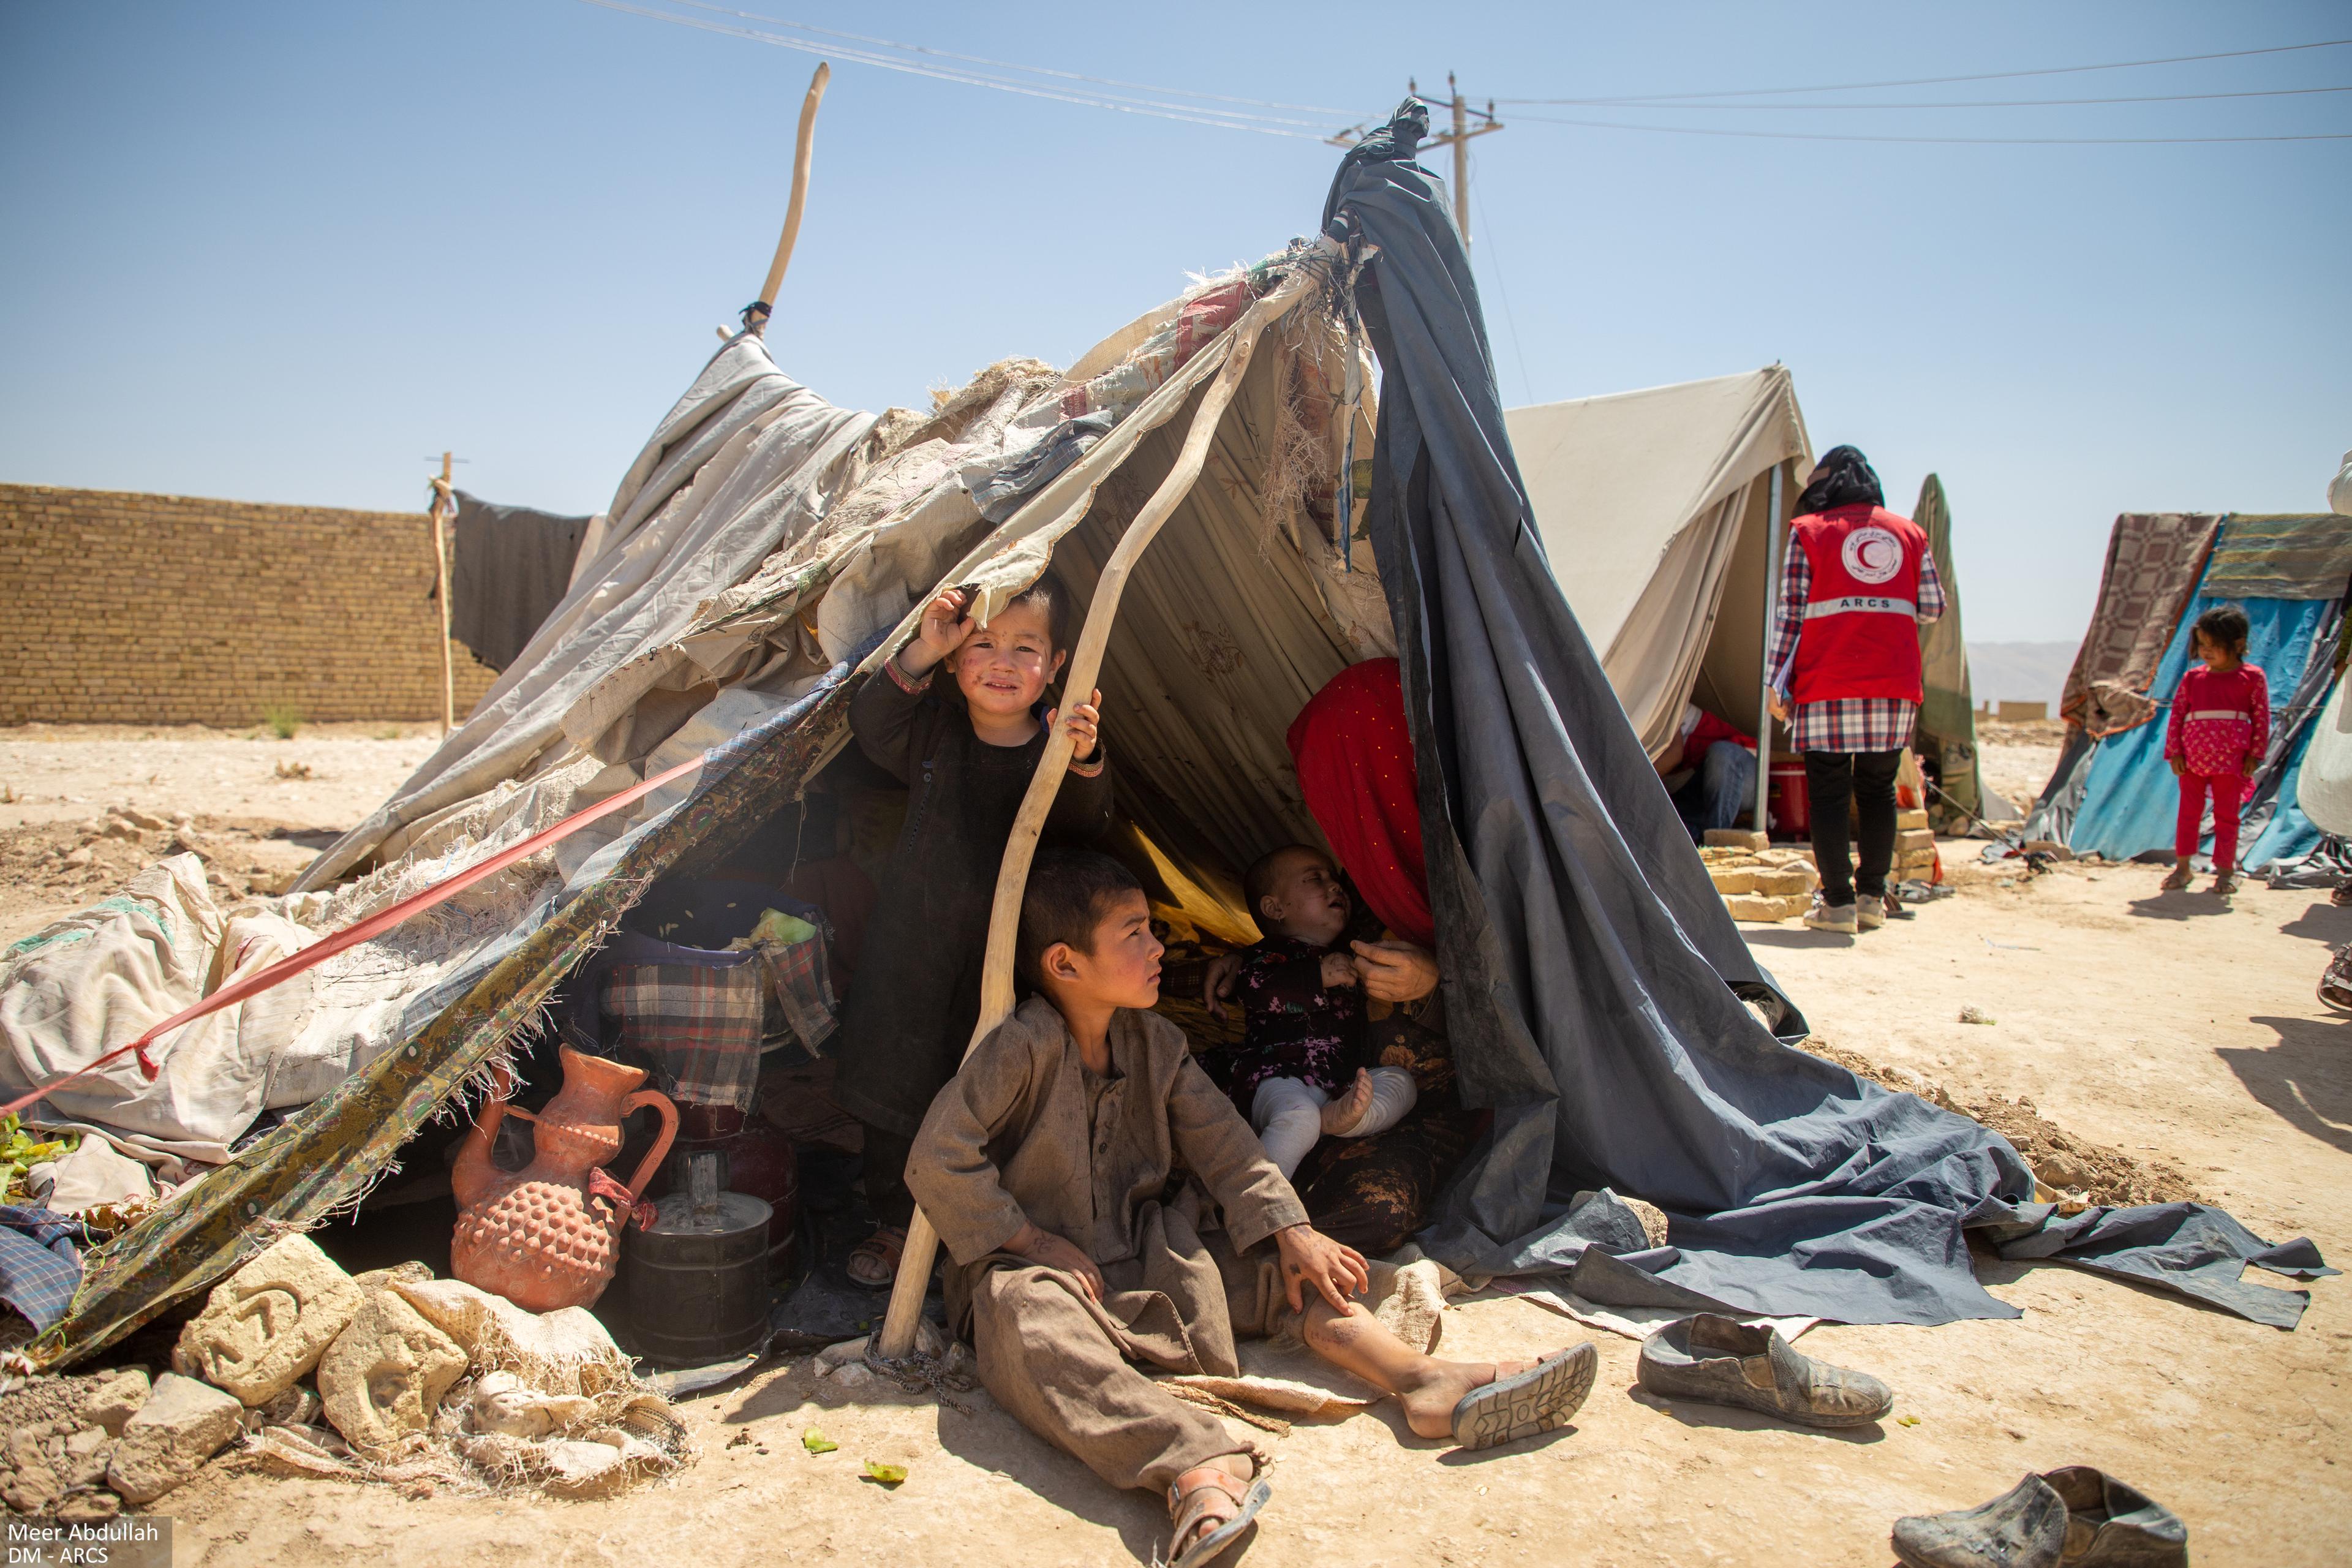 Trois enfants et une femme dans une tente artisanale en Afghanistan. Des tentes similaires sont visibles en arrière-plan.